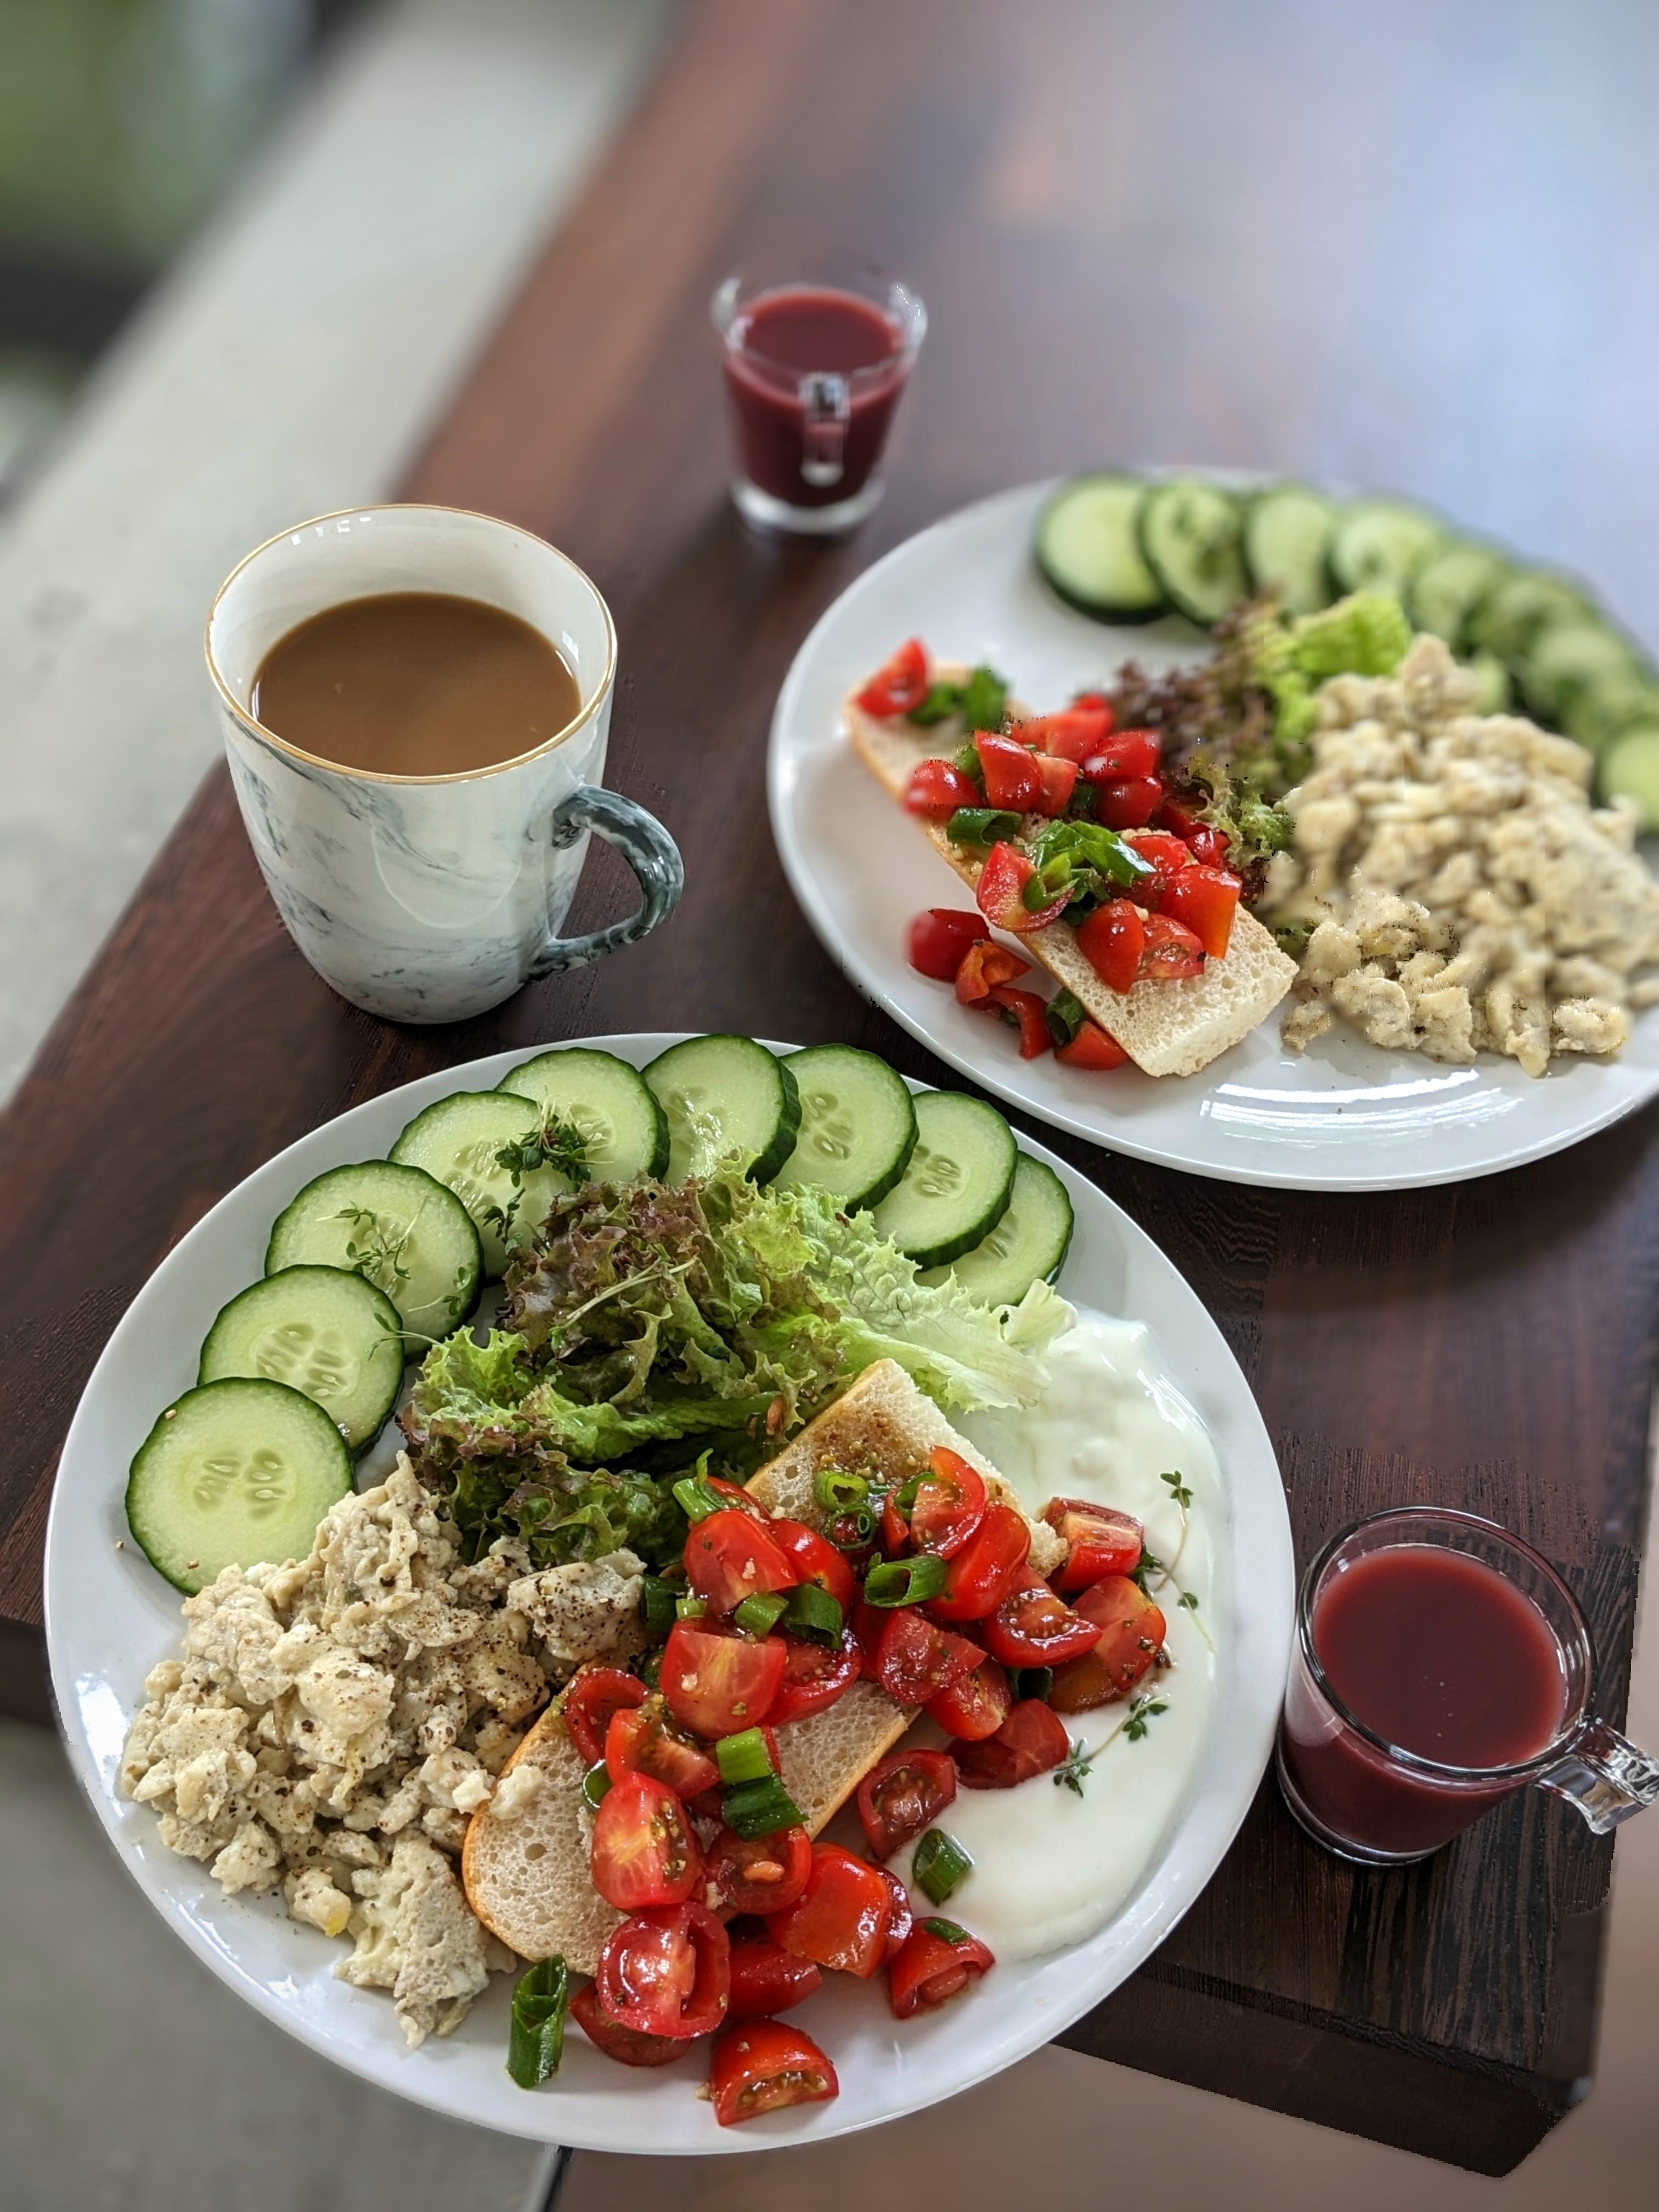 Lecker Lunch.🍅
Baguette mit Tomaten und Knoblauch.🧄
Dazu Salat und Rührei.
#lunch#kaffee #lecker #food #sommer